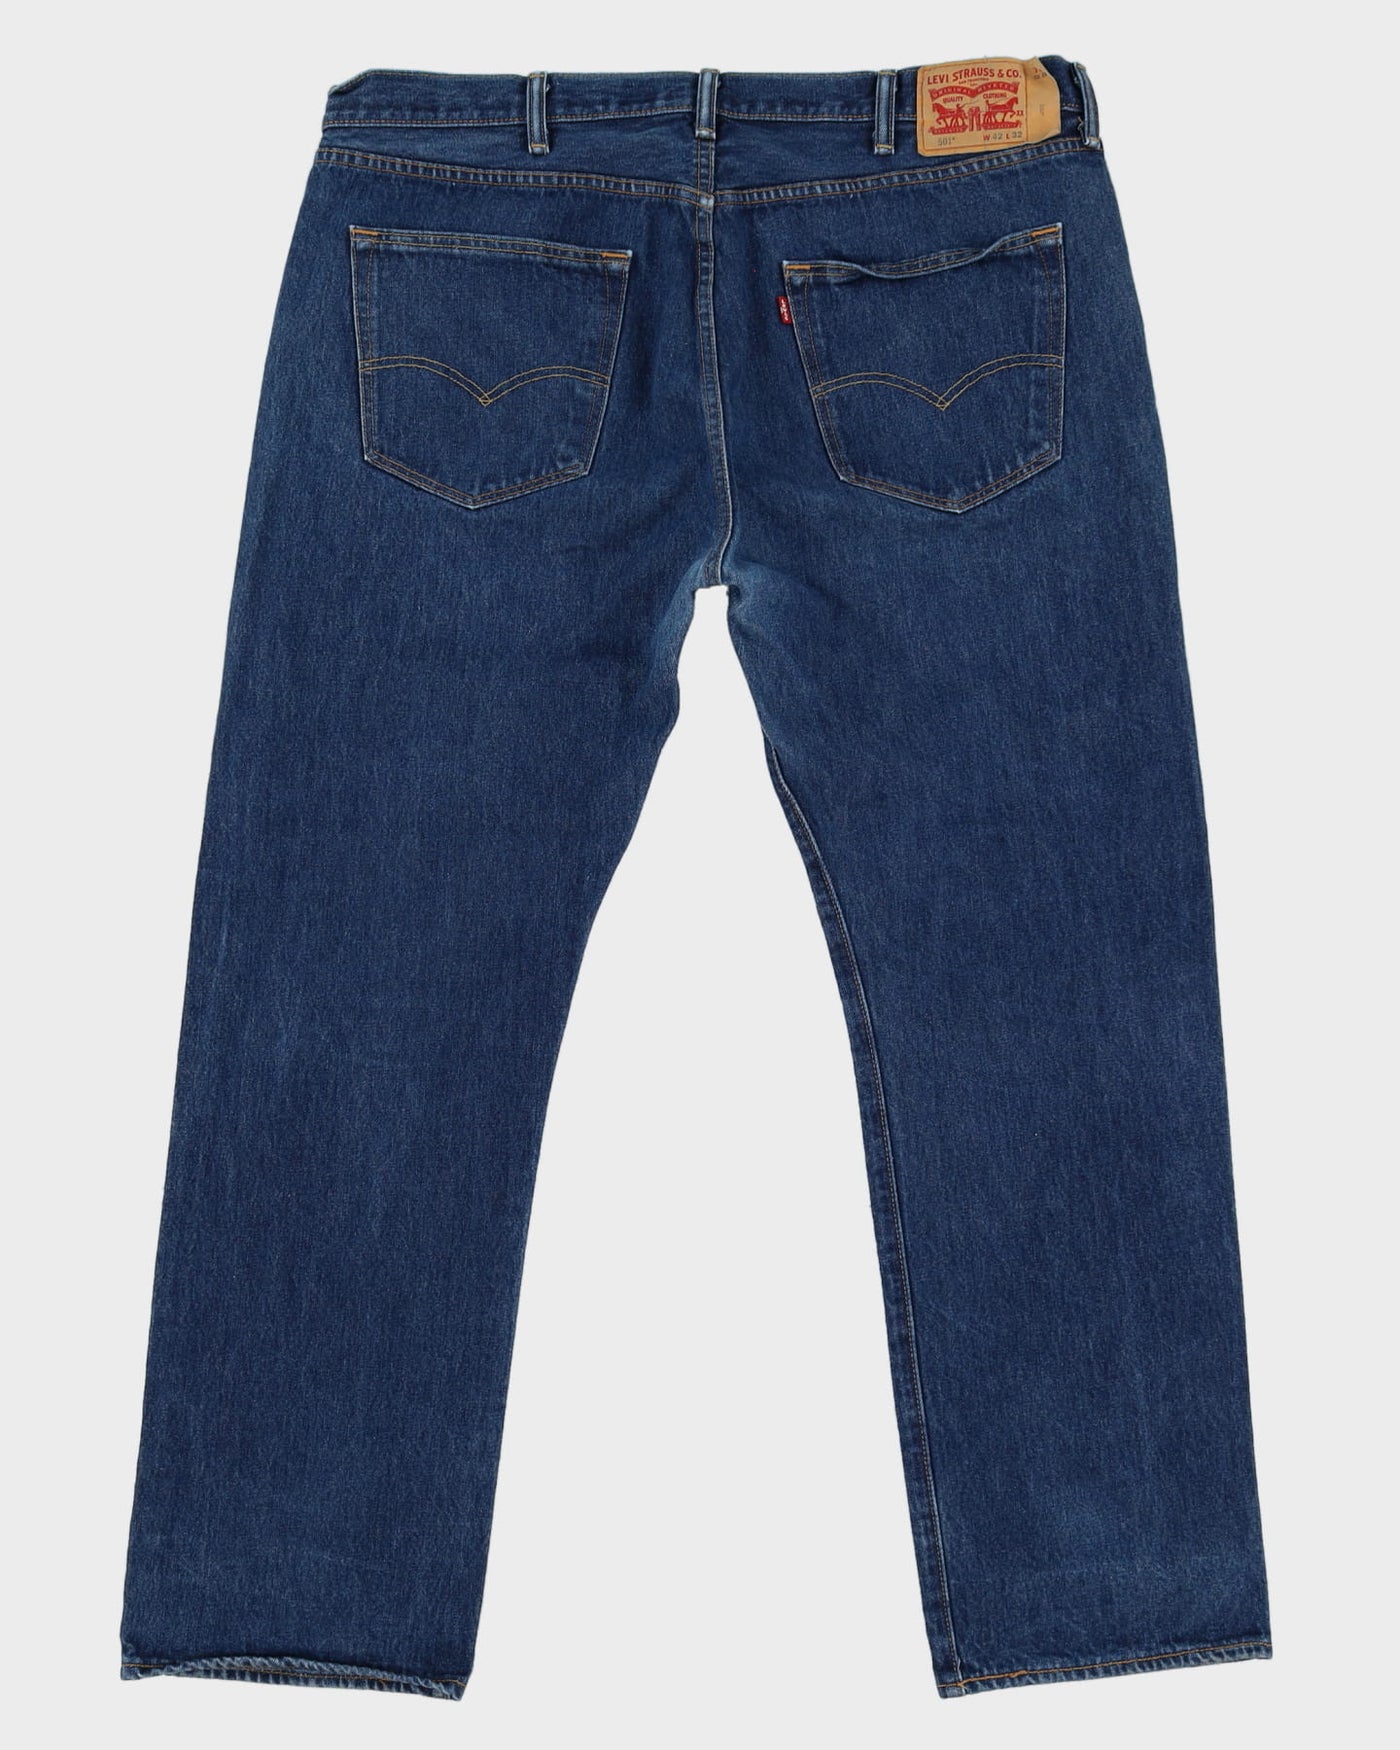 Levi's 501 Blue Dark Wash Jeans - W42 L32